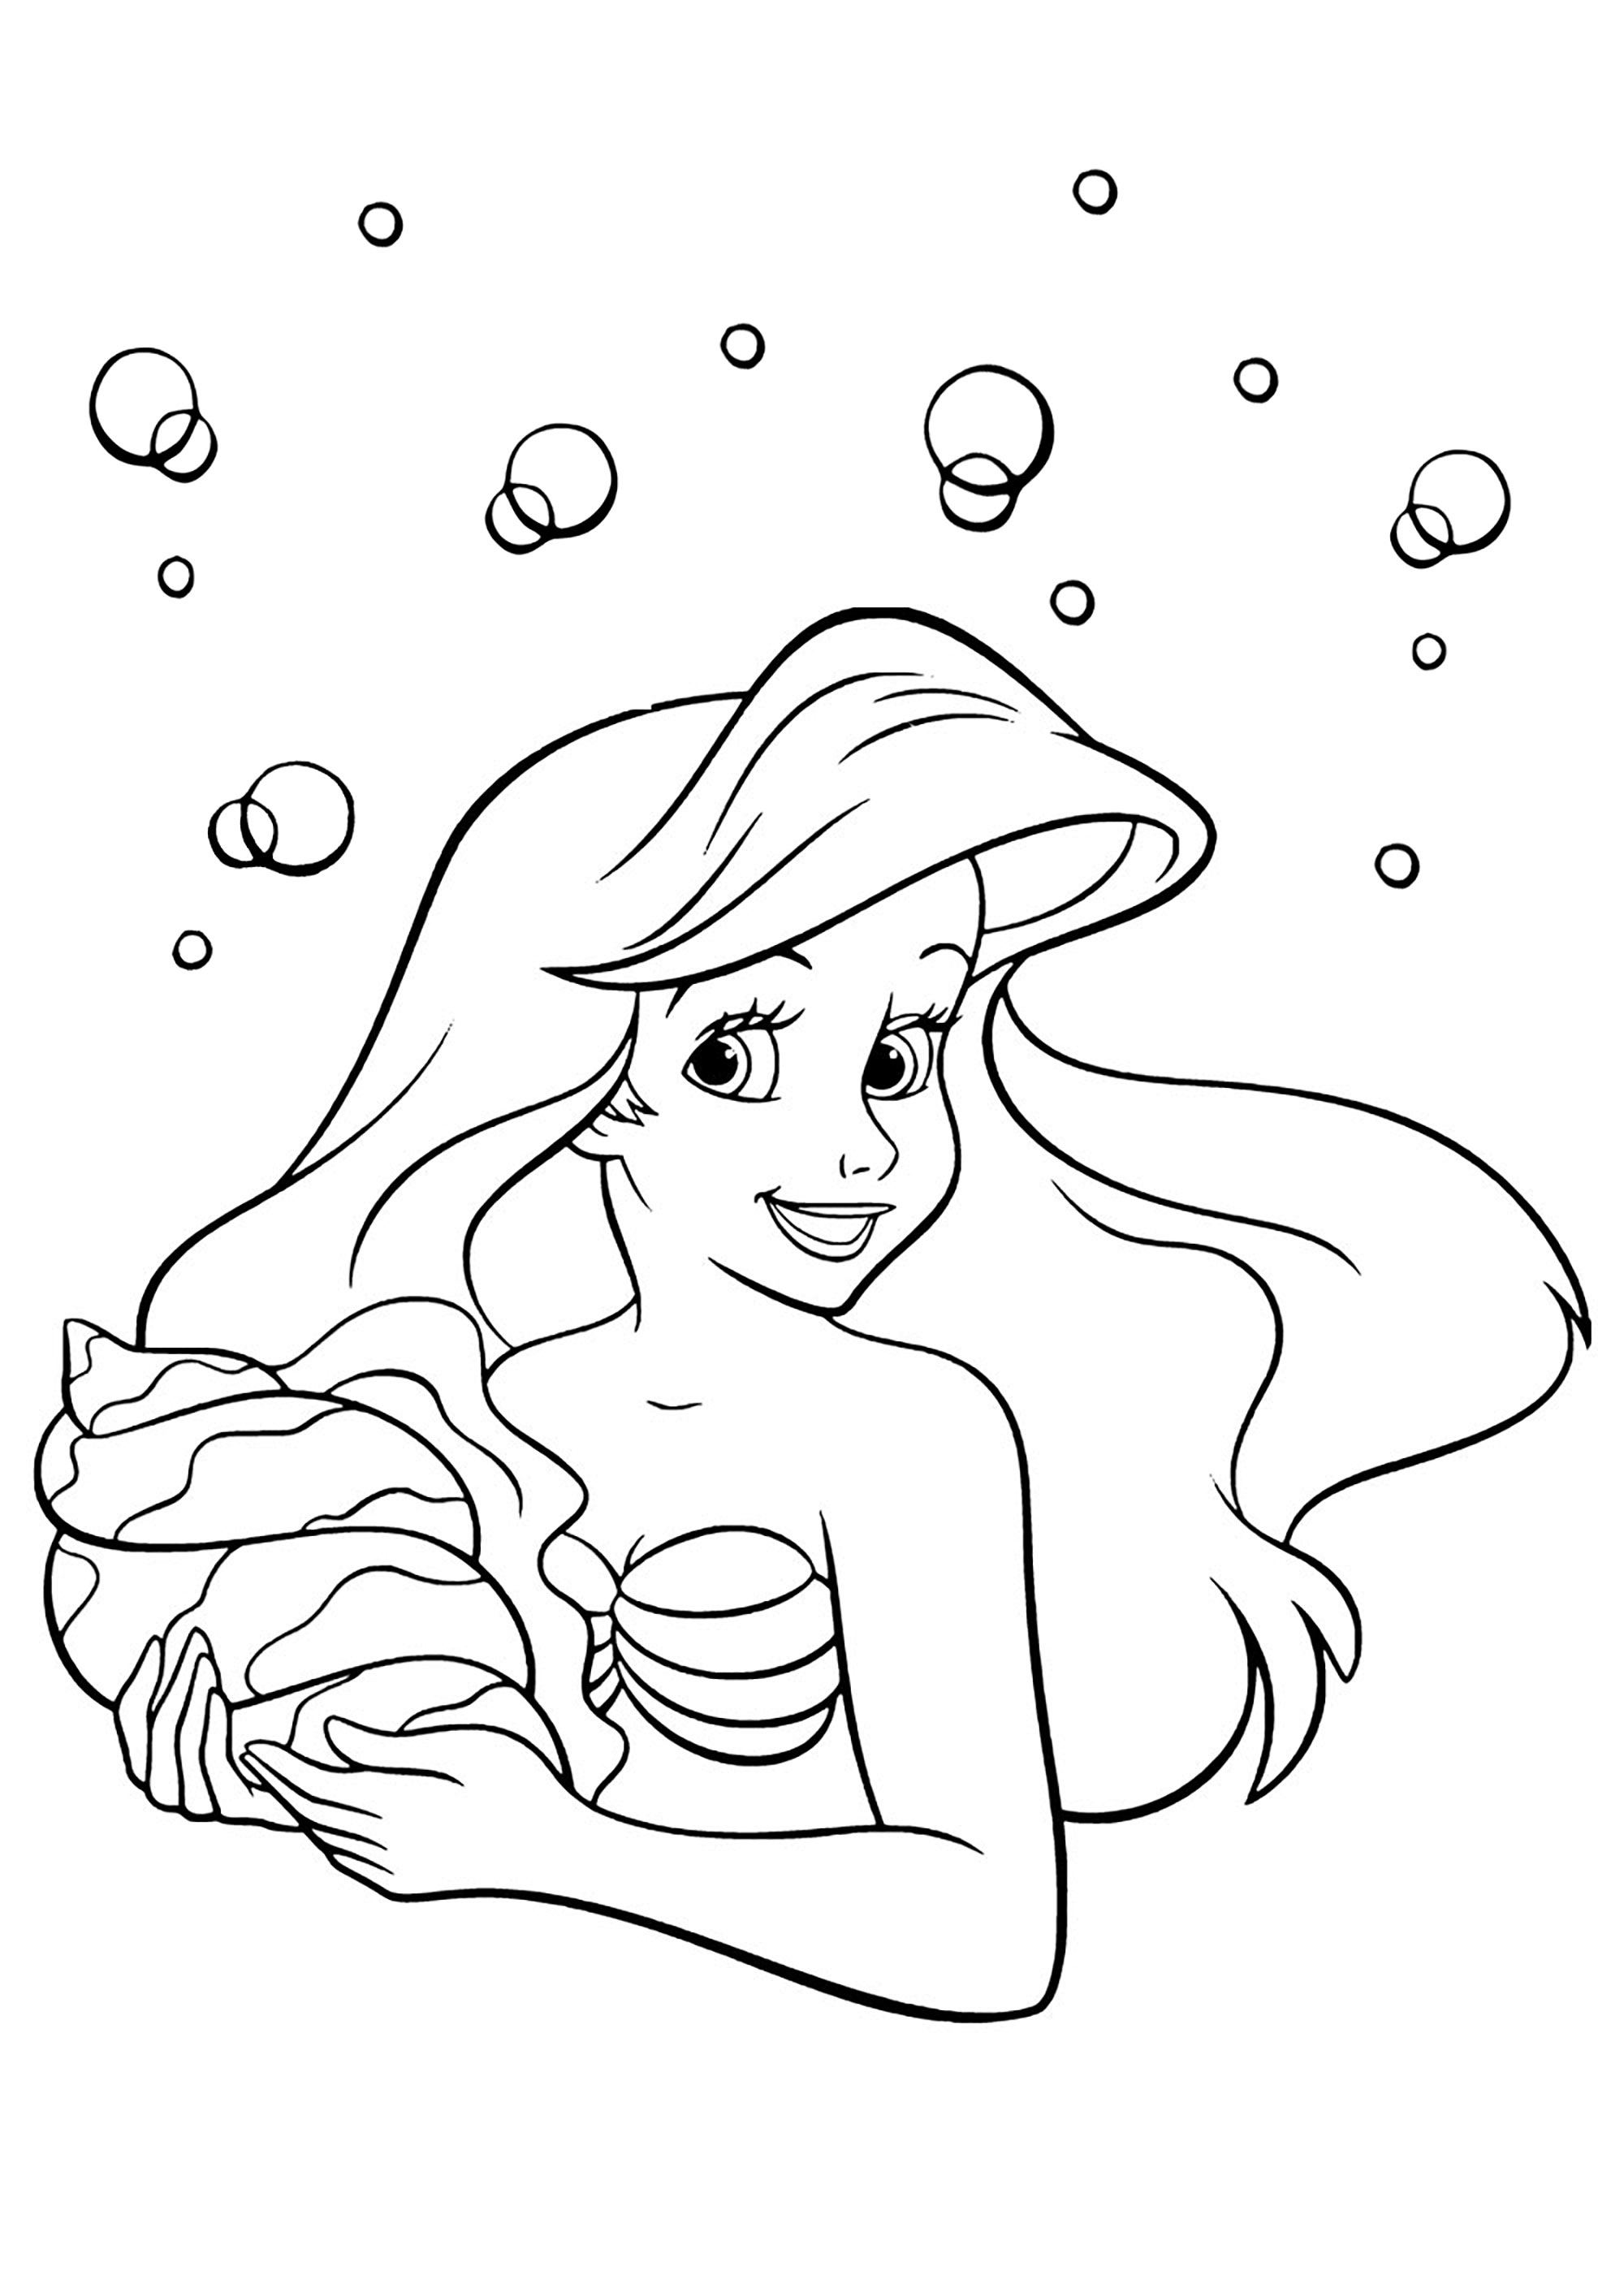 Ariel, a Pequena Sereia, e uma bonita concha do mar. Coloração muito simples com poucos pormenores